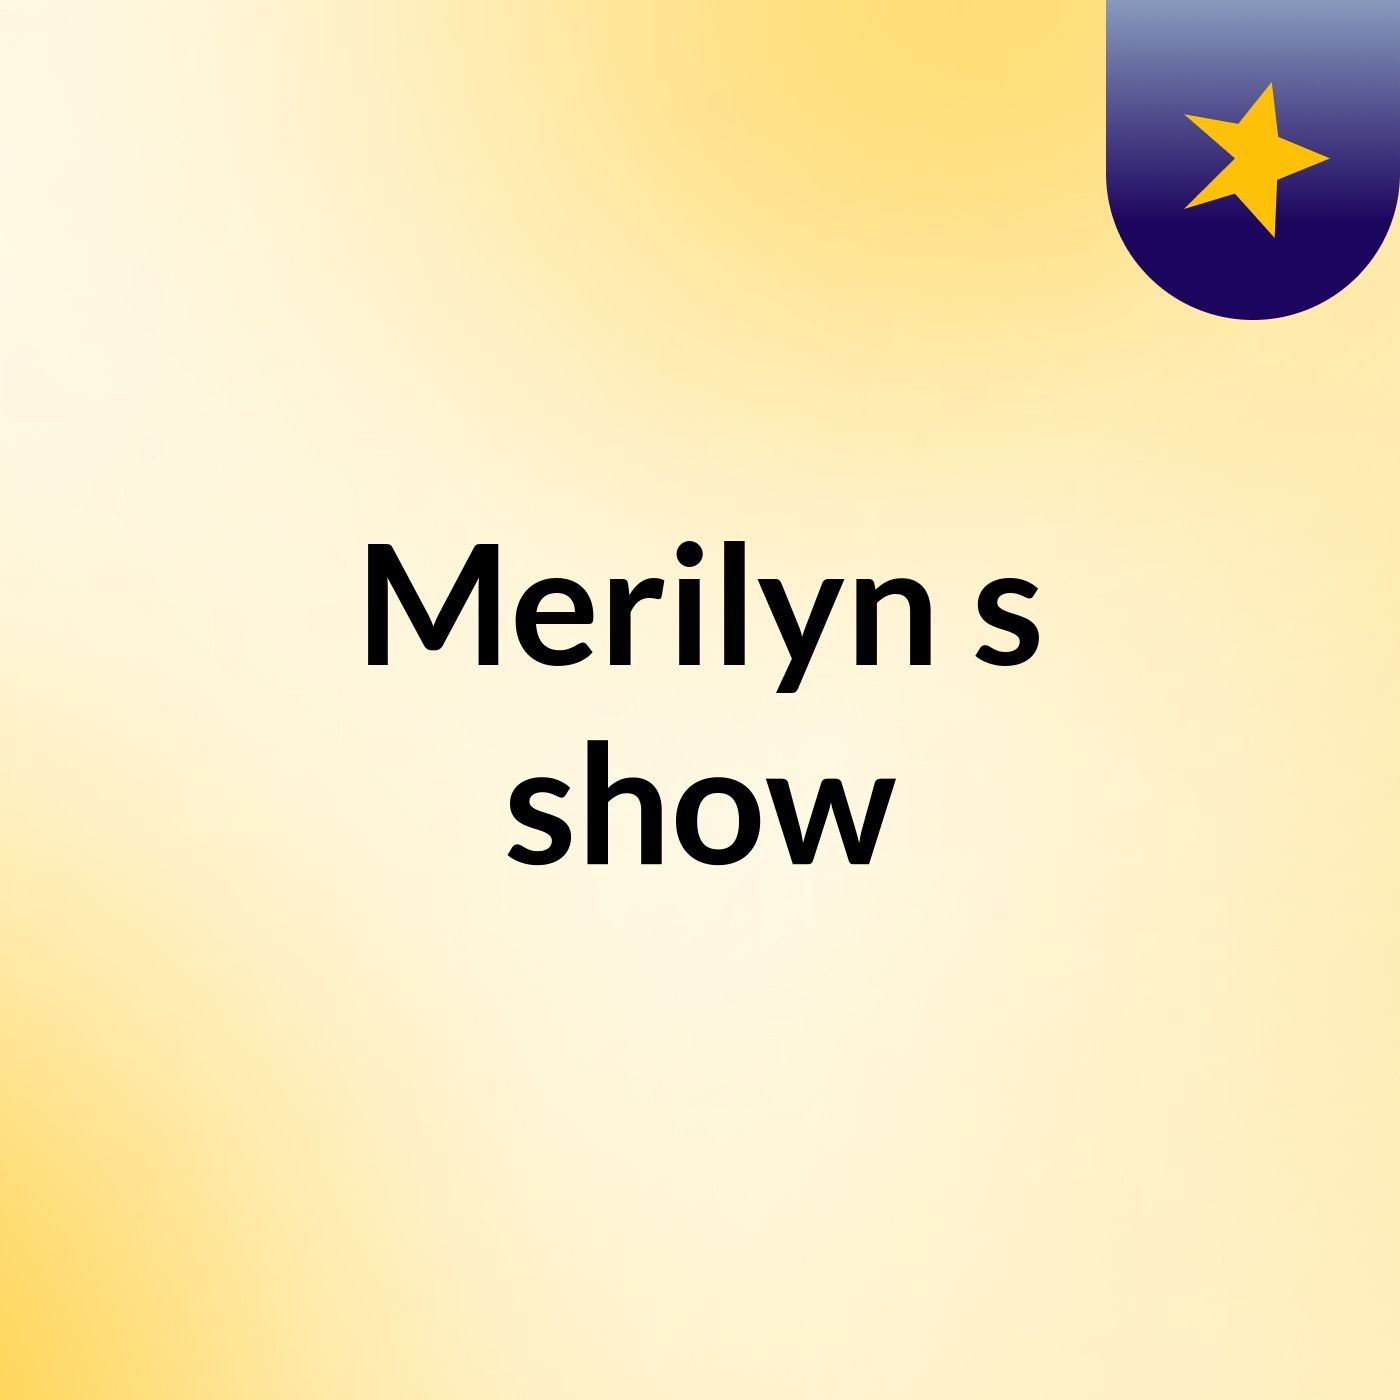 Merilyn's show